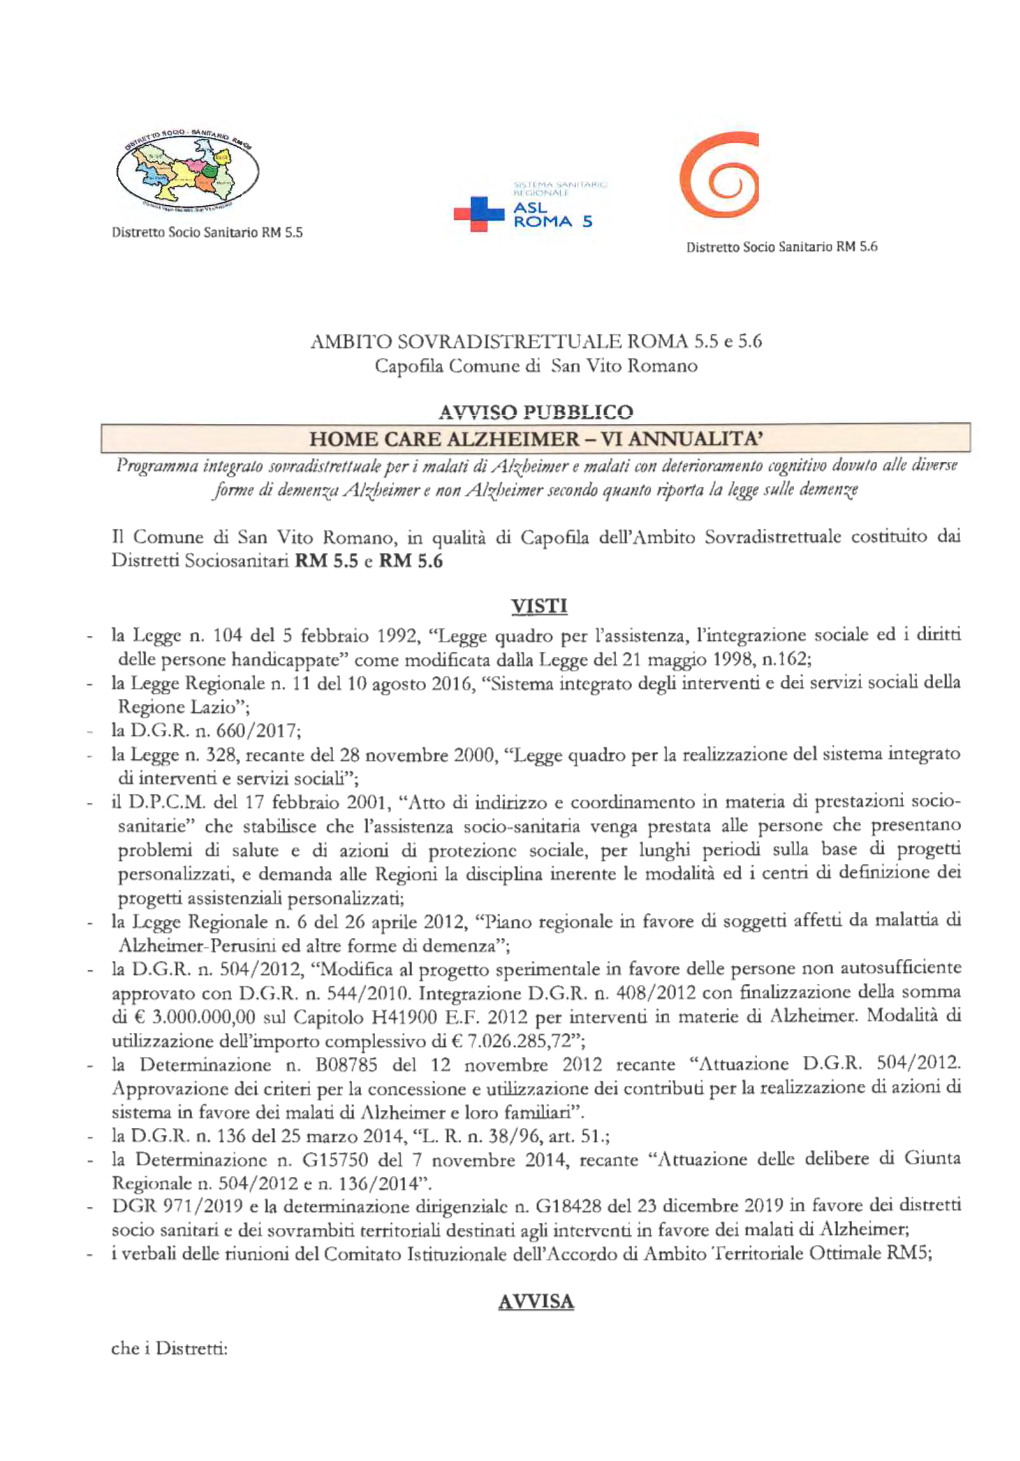 AMBITO SOVRADISTRETTUALE ROMA 5.5 E 5.6 Capofila Comune Di San Vito Romano